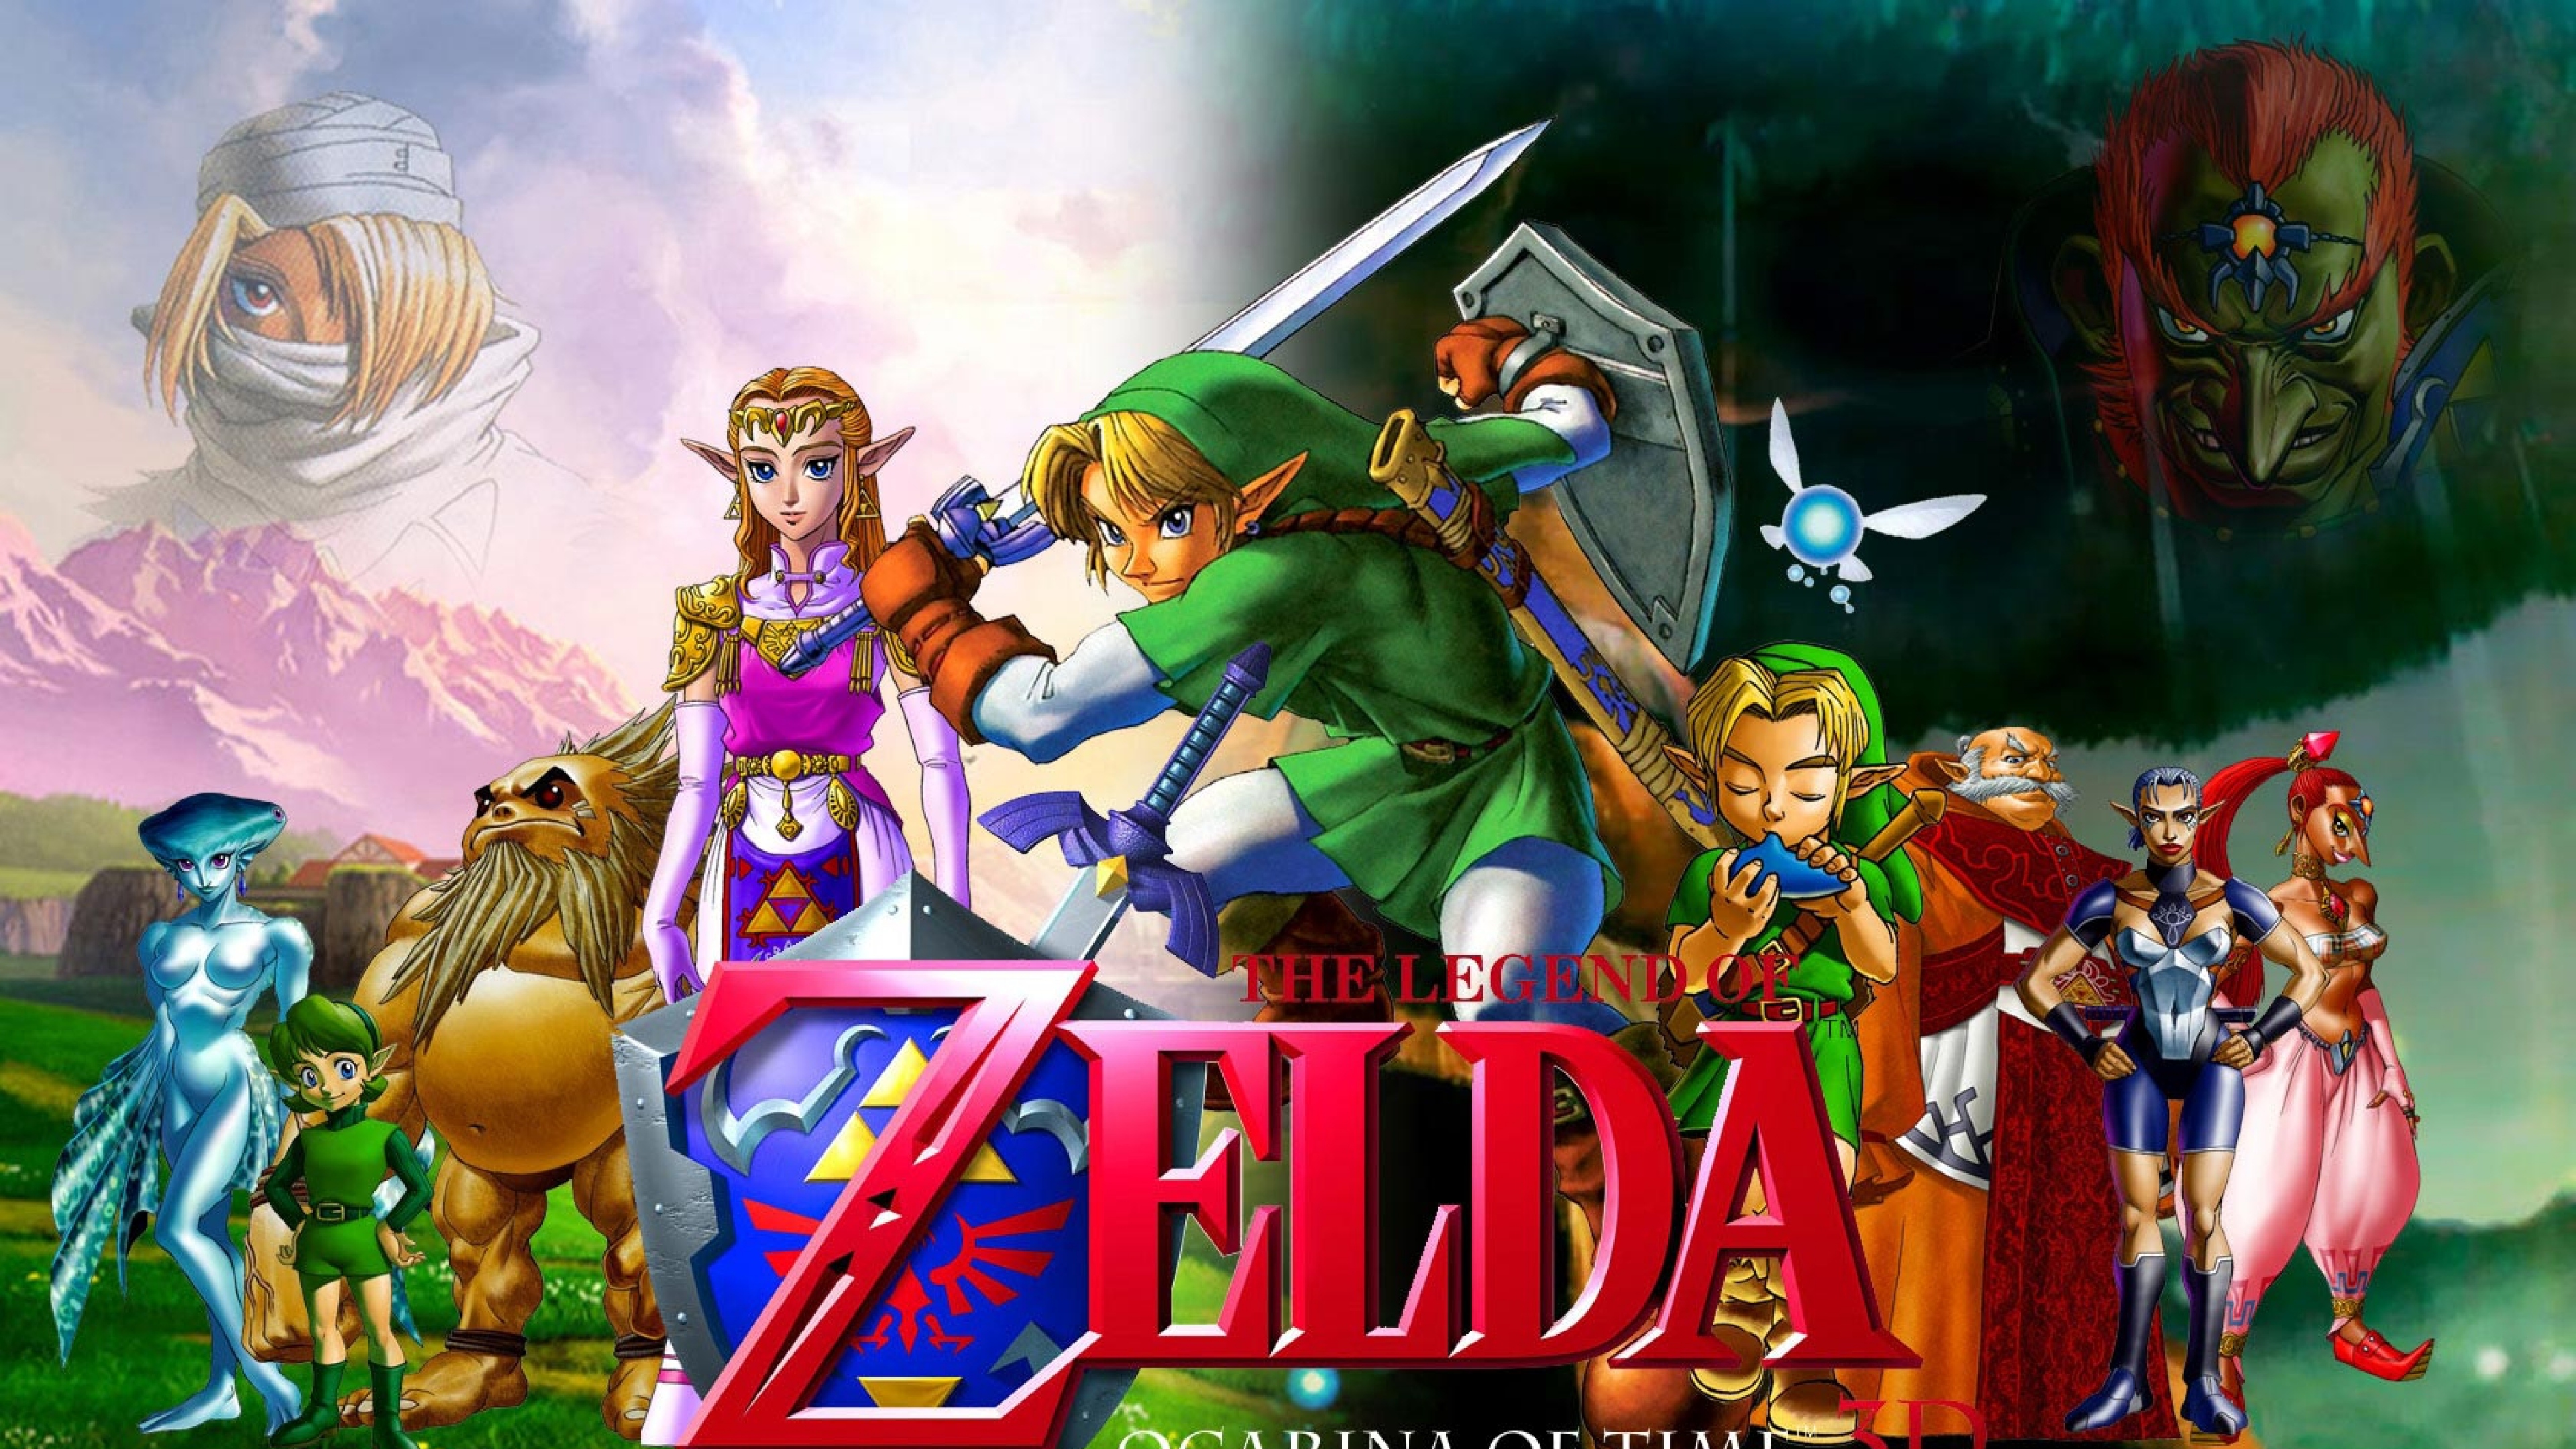  zelda Characters Faces Swords Zelda Wallpaper Background 4K Ultra